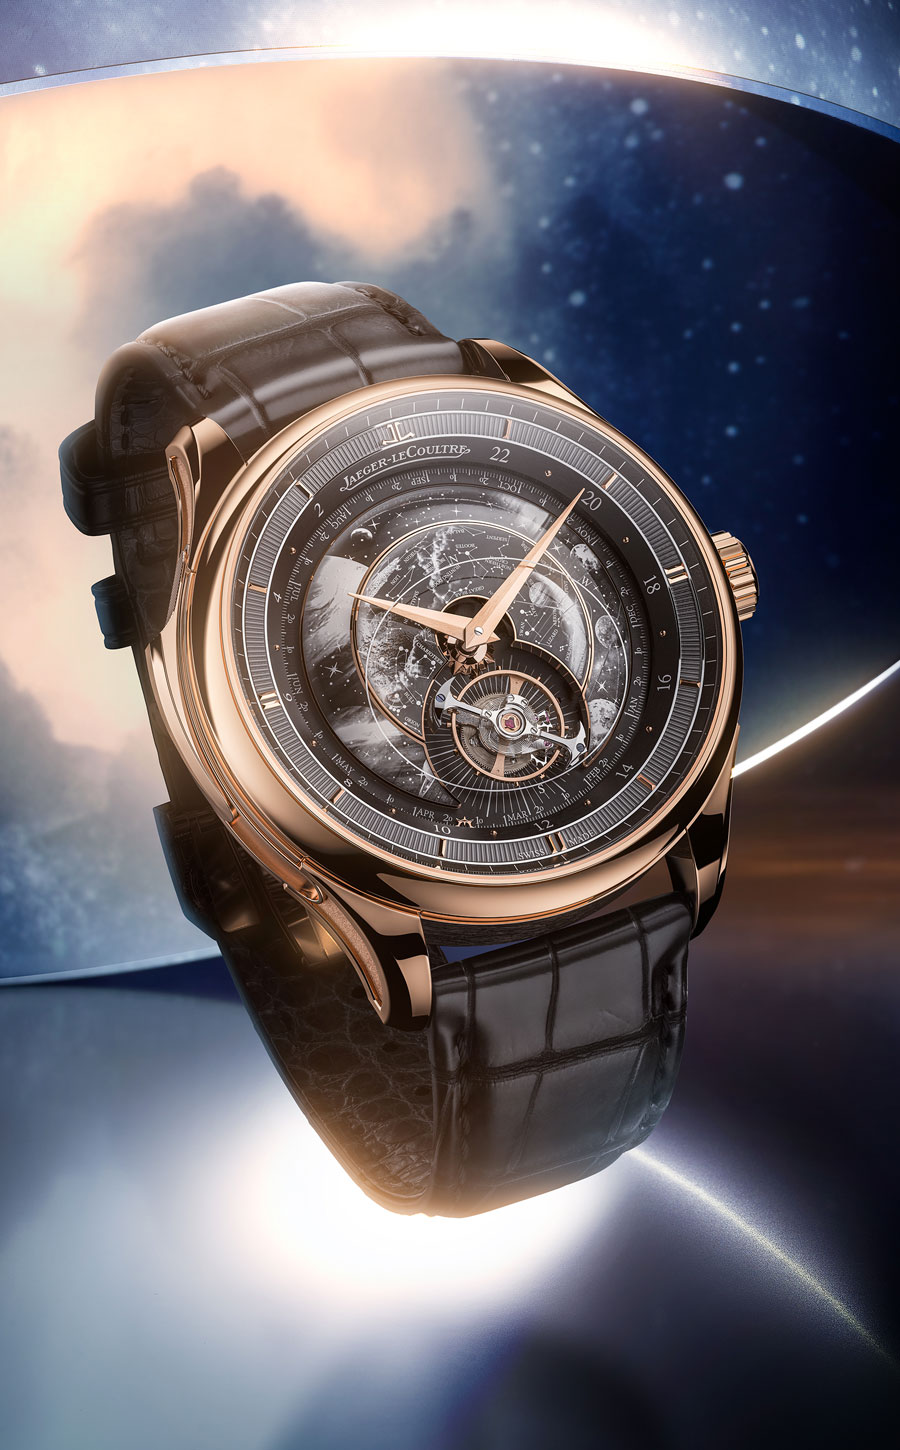 La Hybris Artistica Calibre 945 version « Galaxia » de Jaeger-LeCoultre présentée au Watches and Wonders 2022